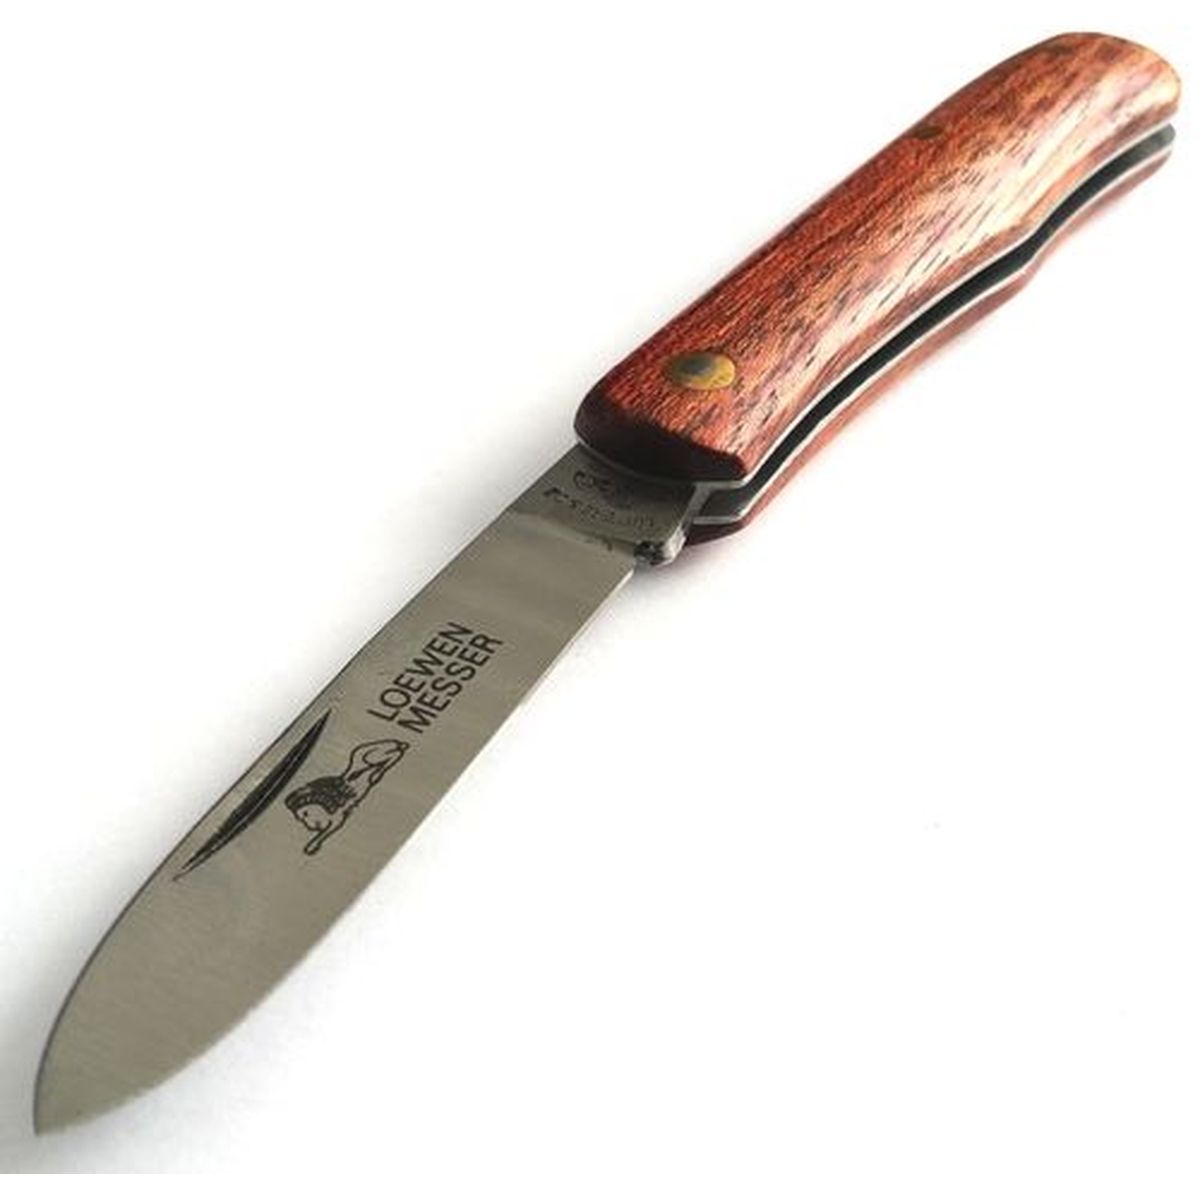 Pocket knife 1047R Loewen 170mm stainless steel